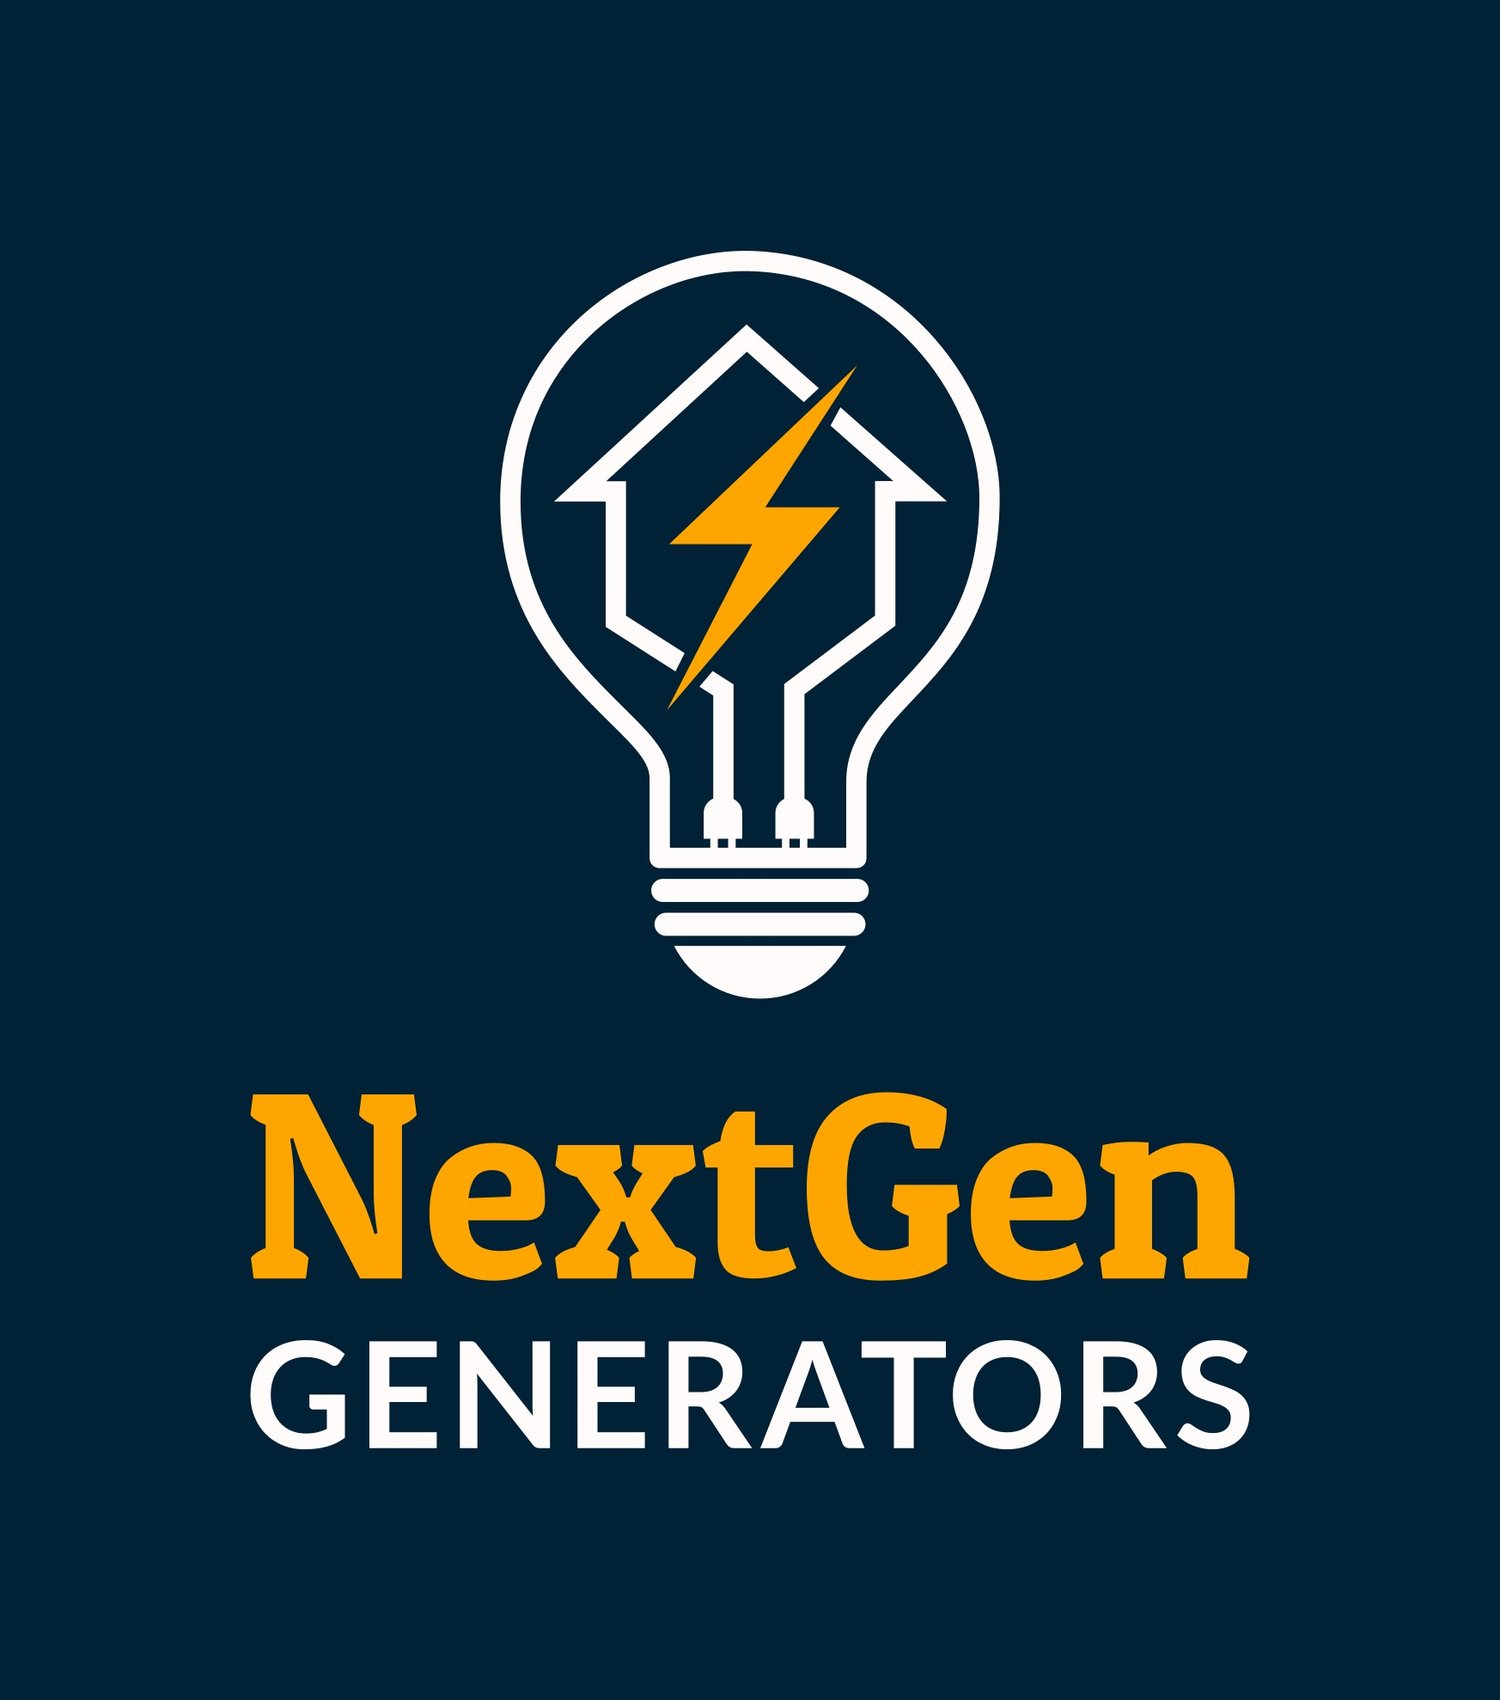 NextGen Generators